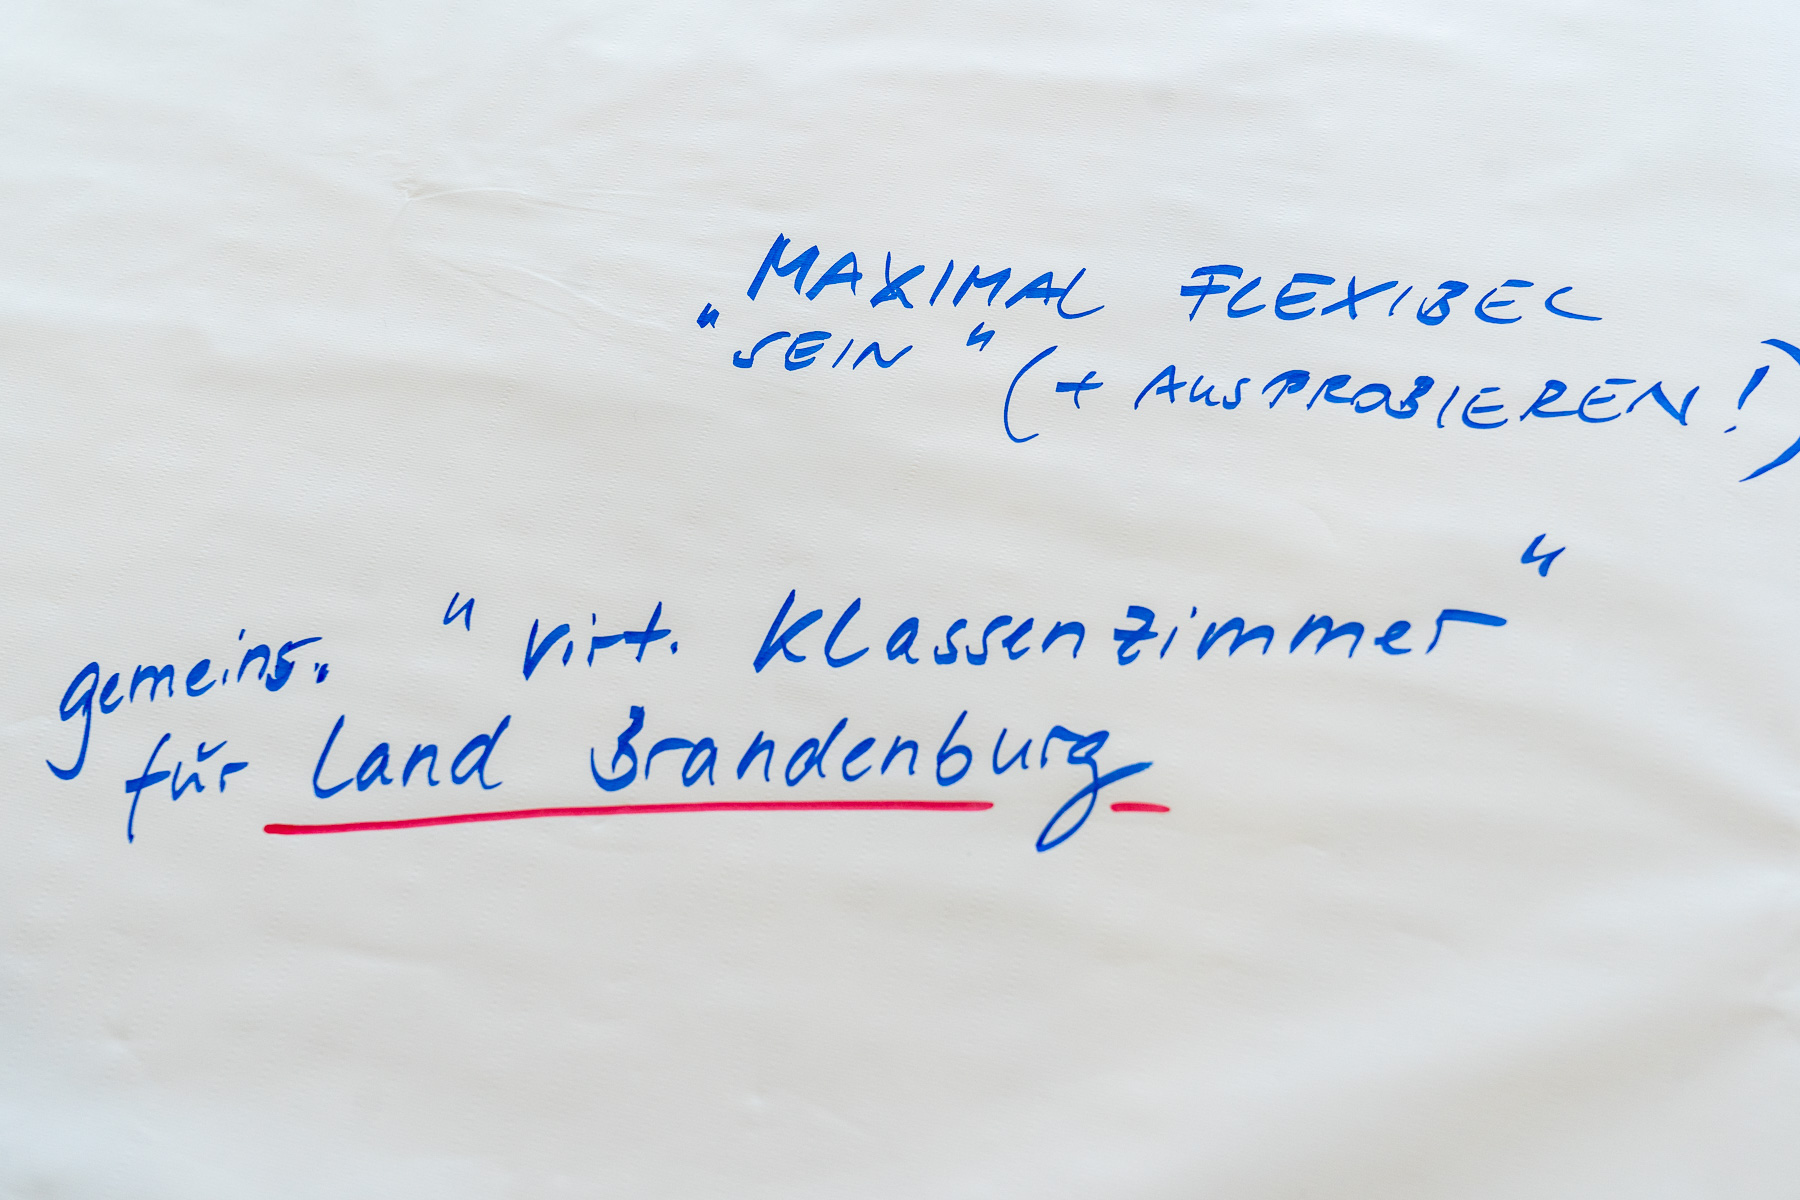 Bild: Bild zeigt Texte auf Thementisch 4: "Maximal flexibel "sein" (+ ausprobieren!); gemeinsames "virtuelles Klassenzimmer" für Land Brandenburg"